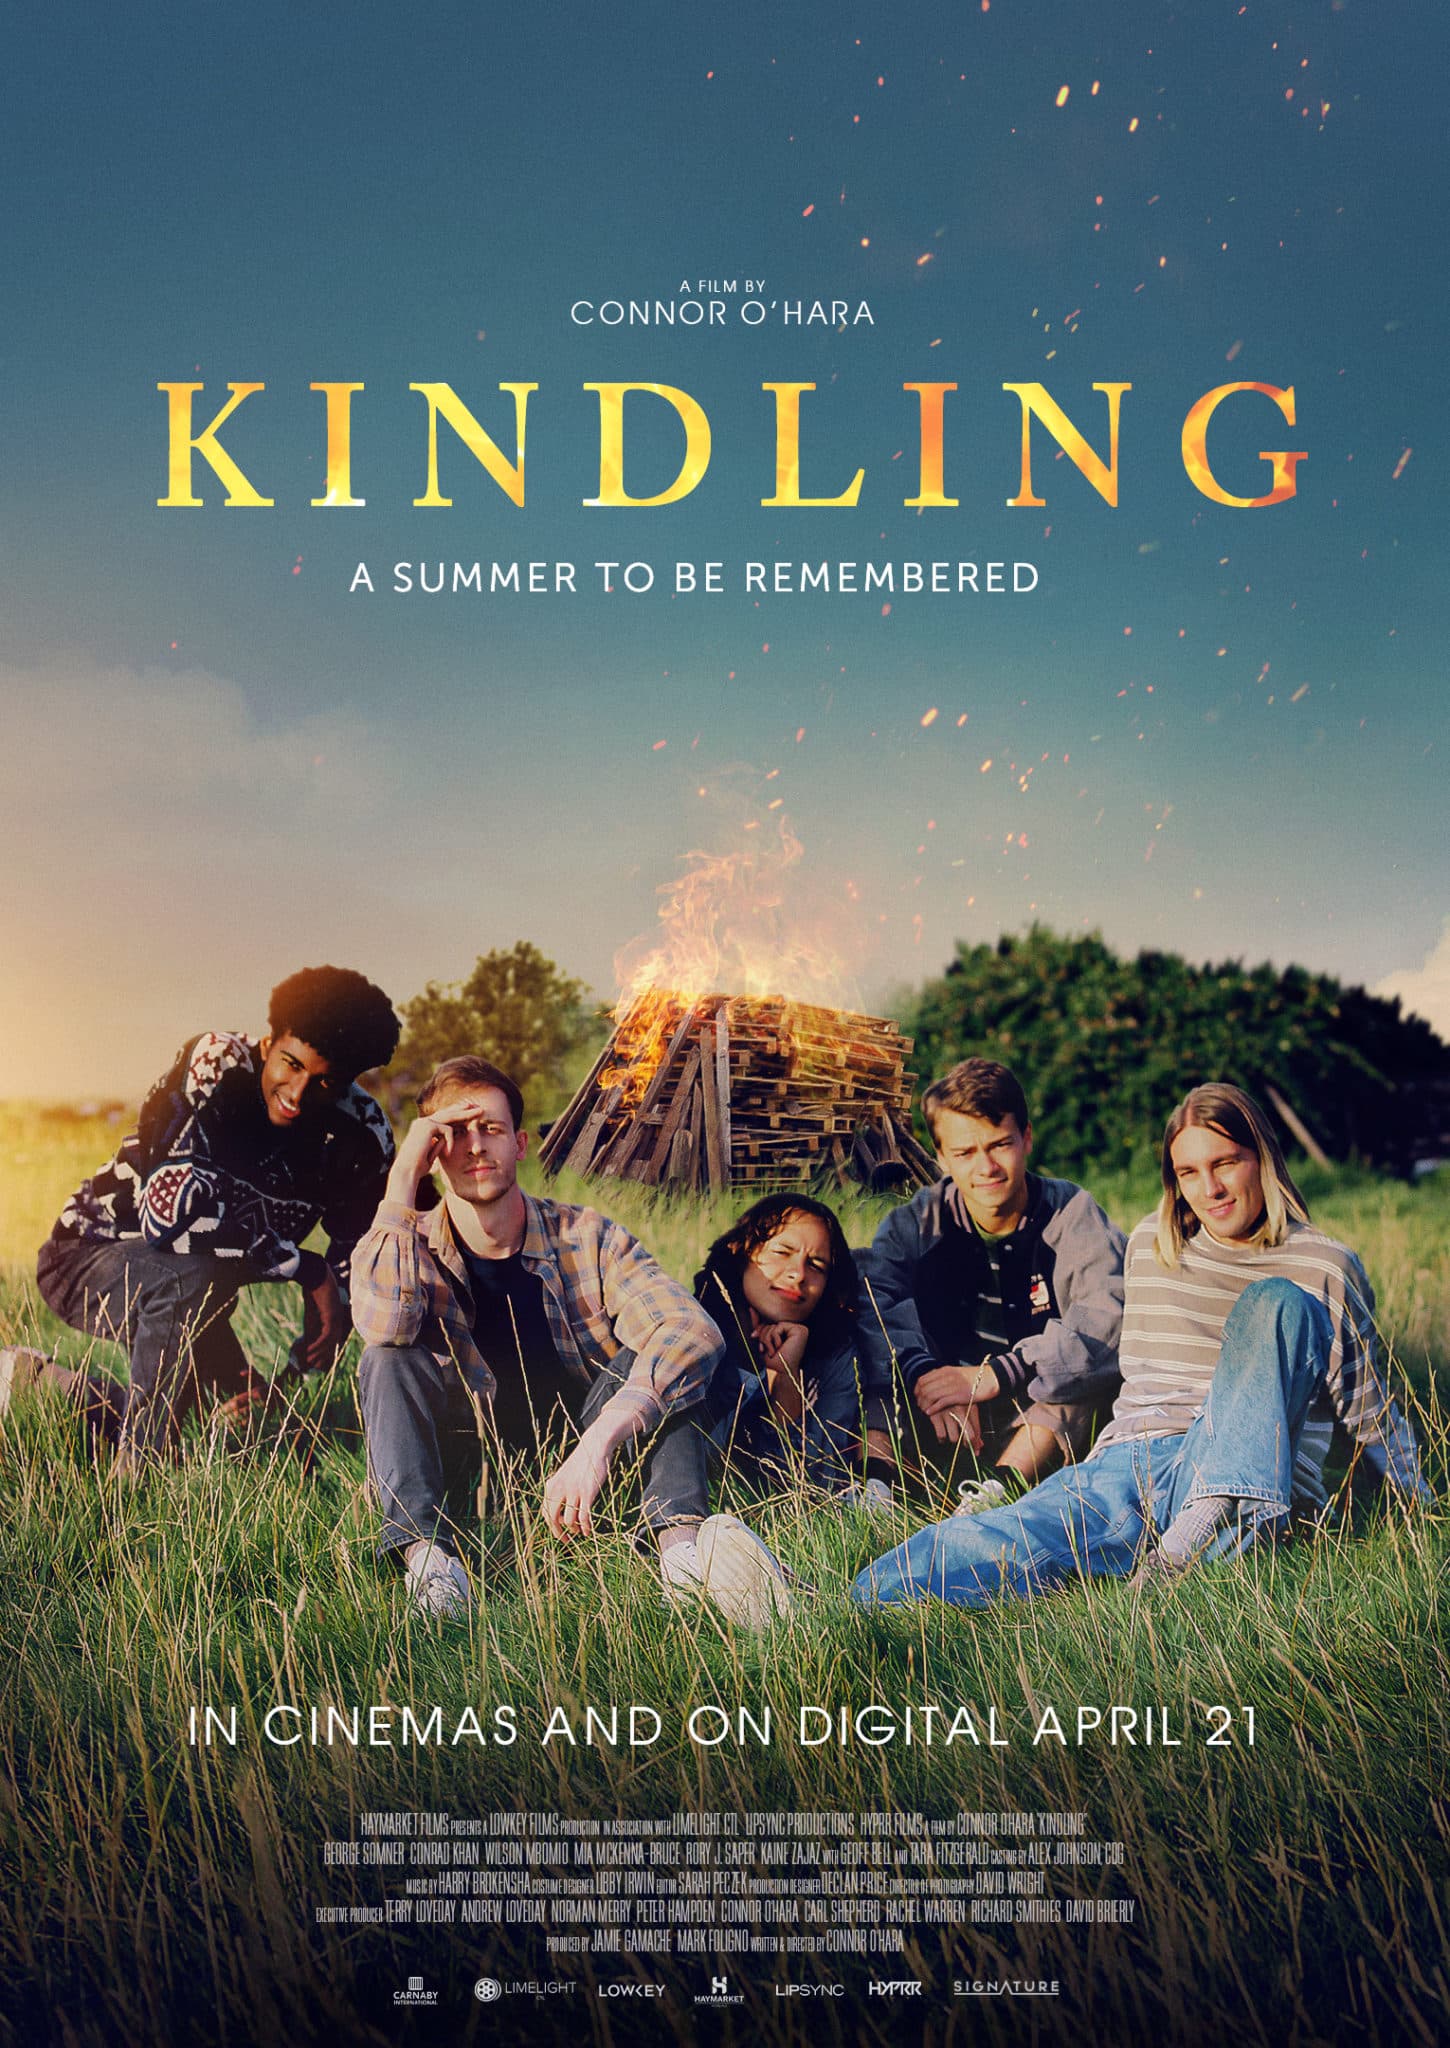 Trailer for British film 'Kindling'